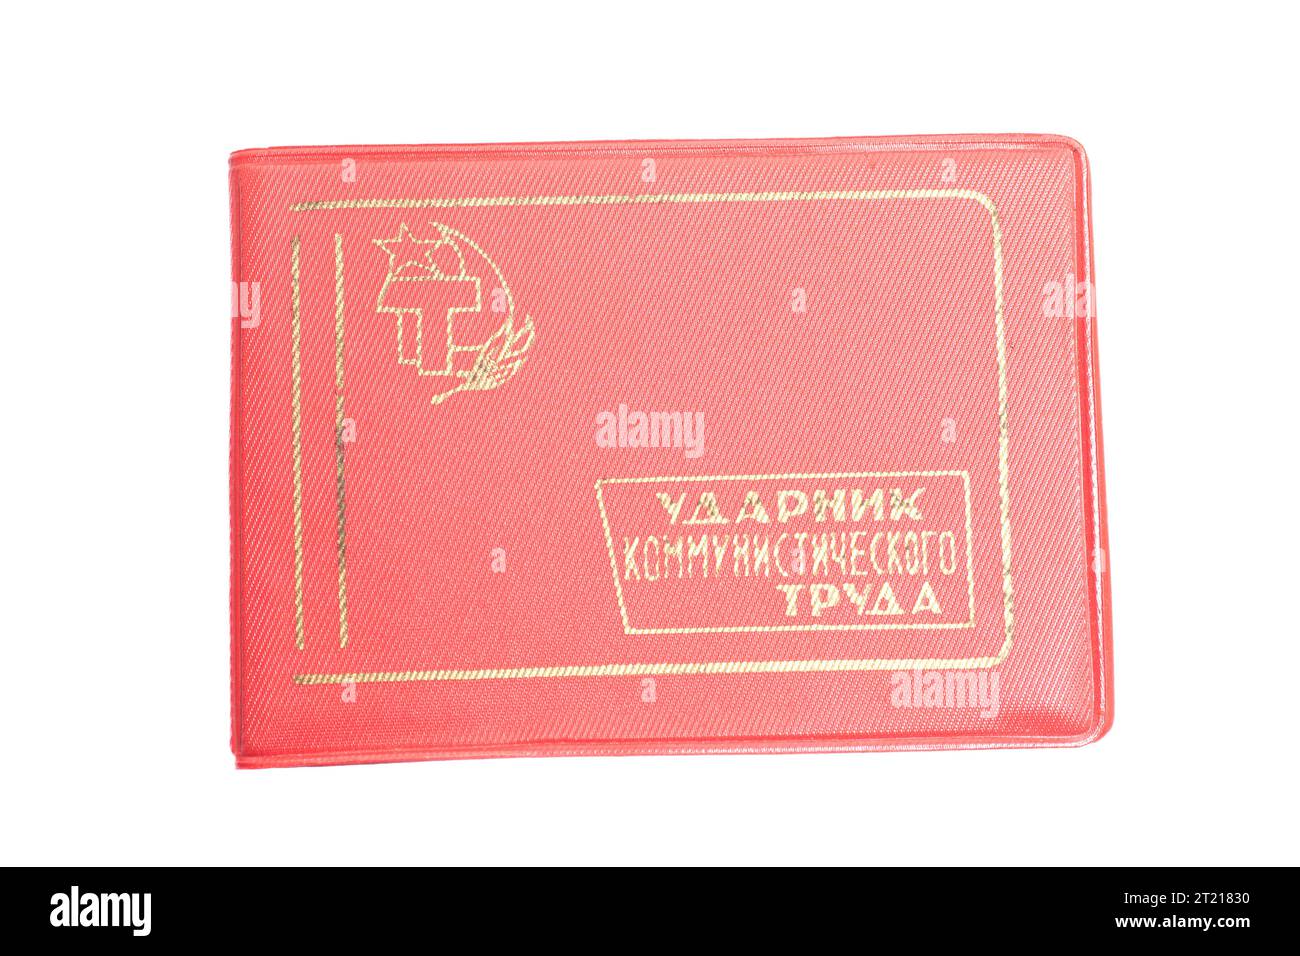 Certificazione al batterista del lavoro comunista degli anni '60 Traduzione in russo: Batterista lavoro comunista Foto Stock